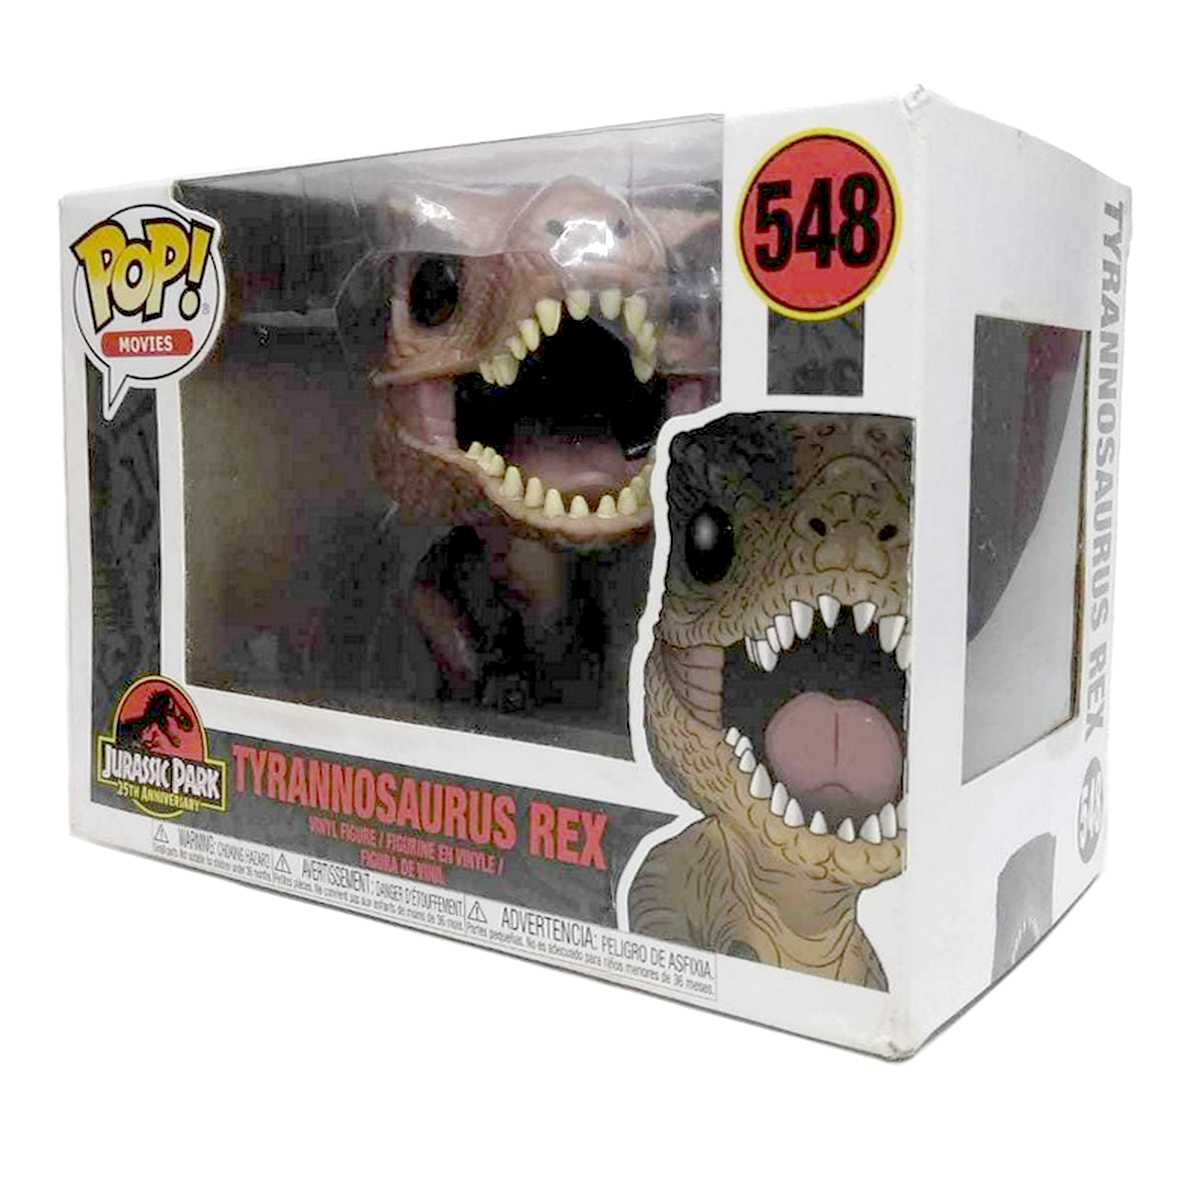 Funko Pop! Movies Jurassic Park Tyrannosaurus Rex vinyl figure número 548